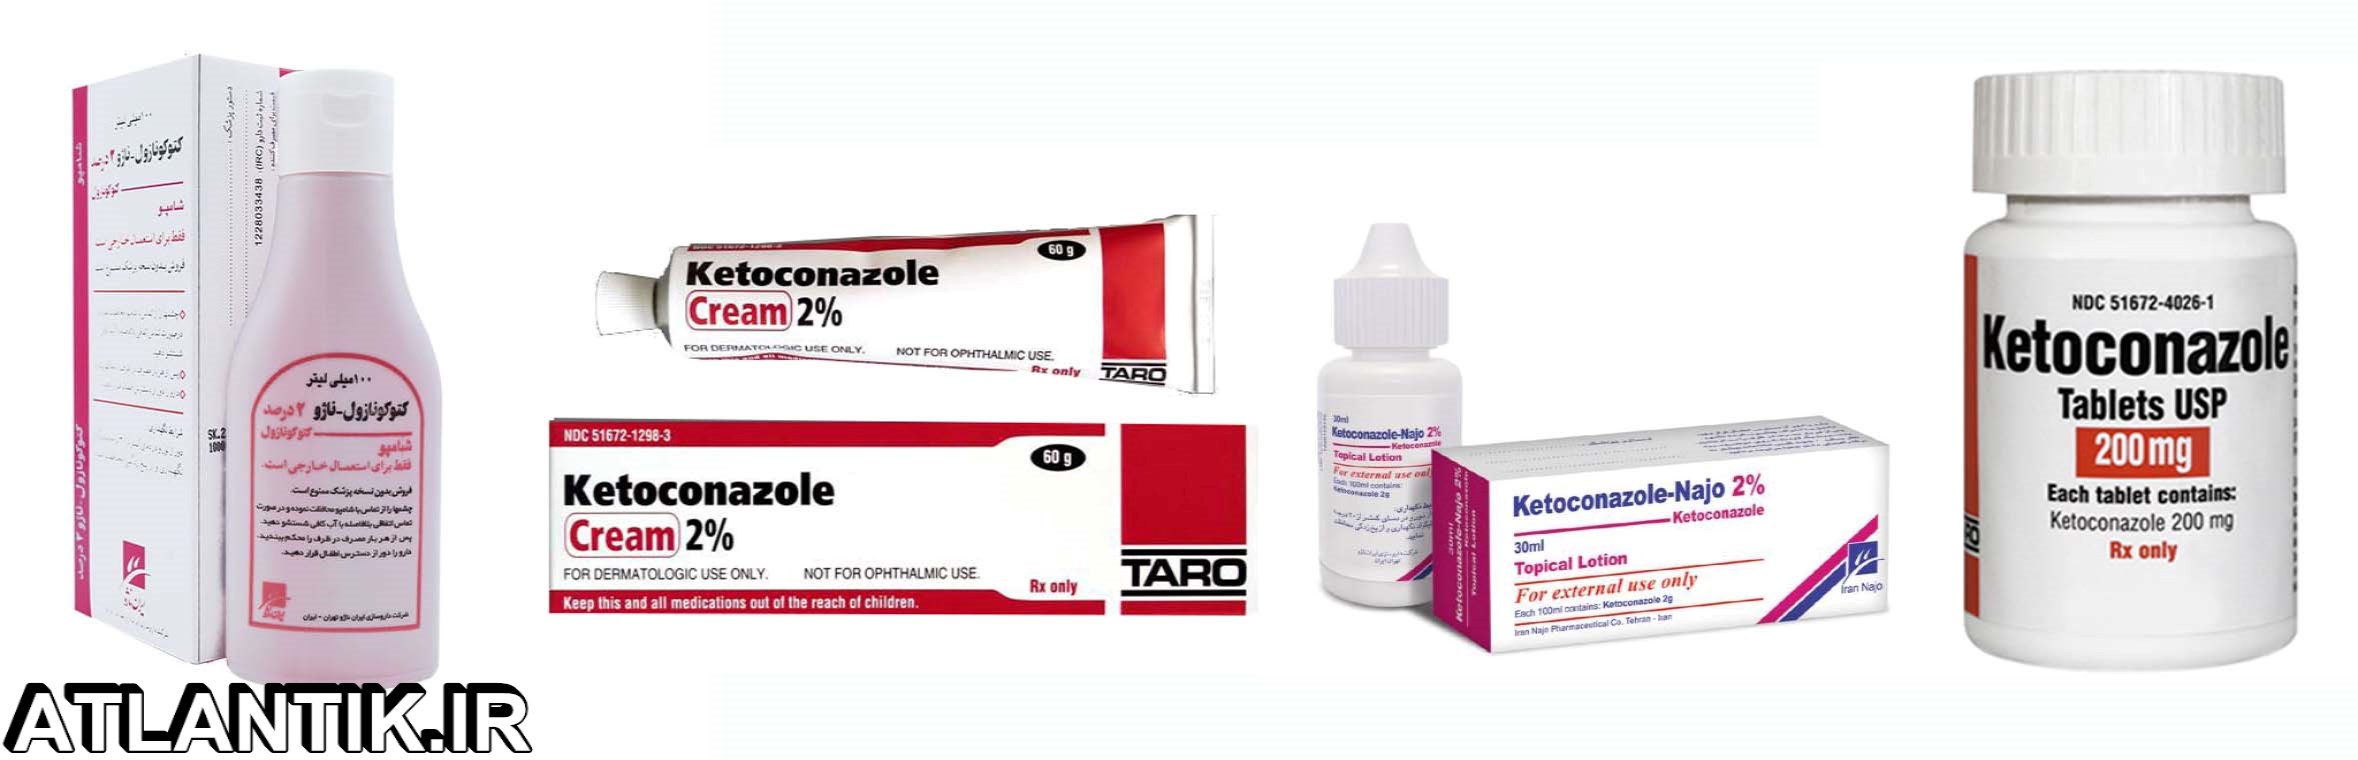 داروشناسي آتلانتيک - معرفي داروي ضد قارچ کتوکونازول – Ketoconazole